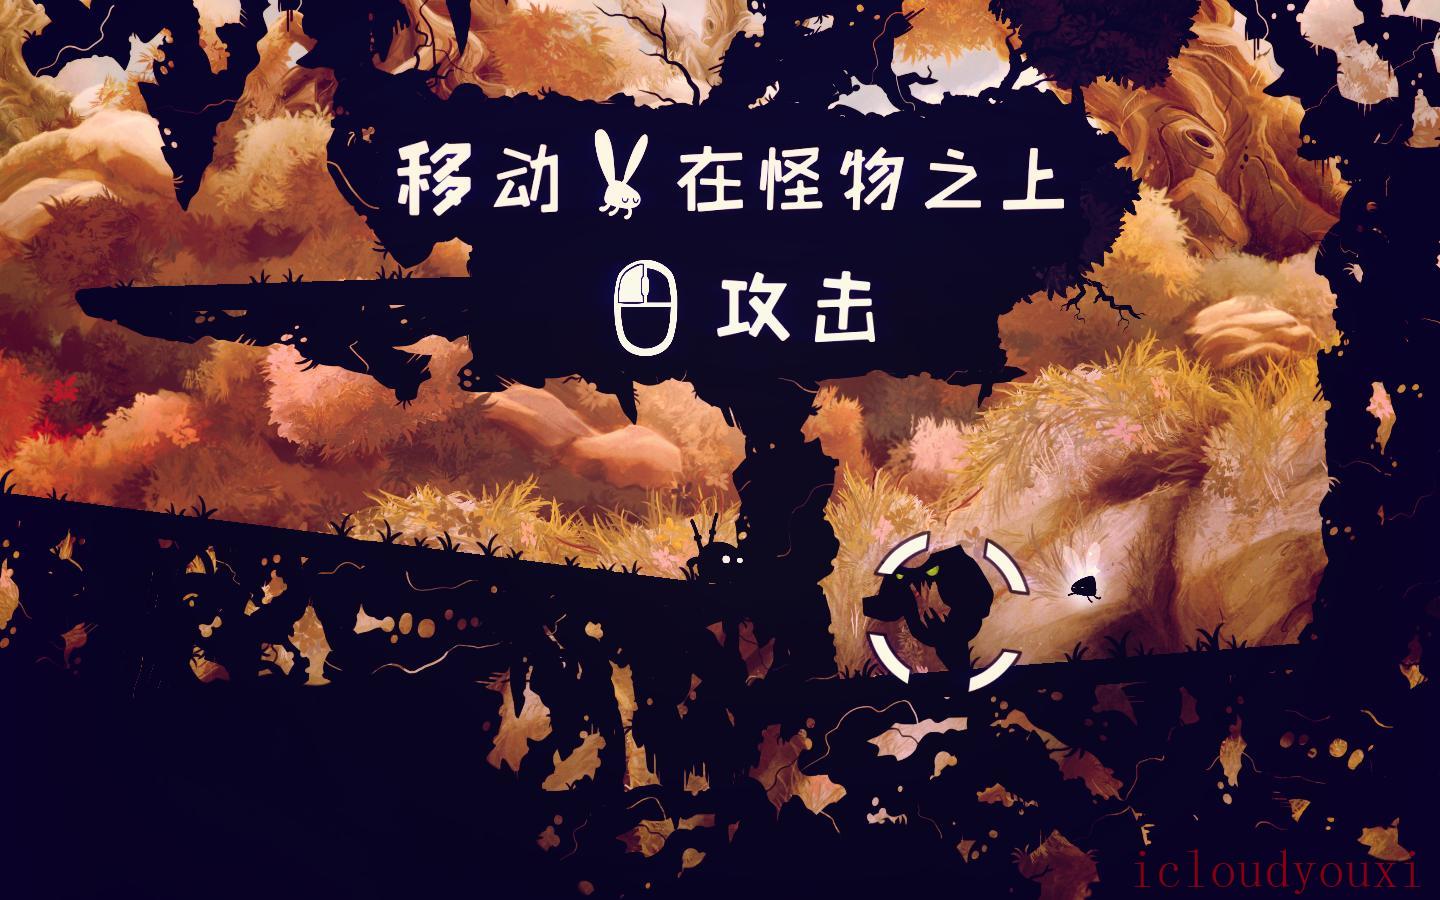 暗影之虫简体中文云游戏截图2